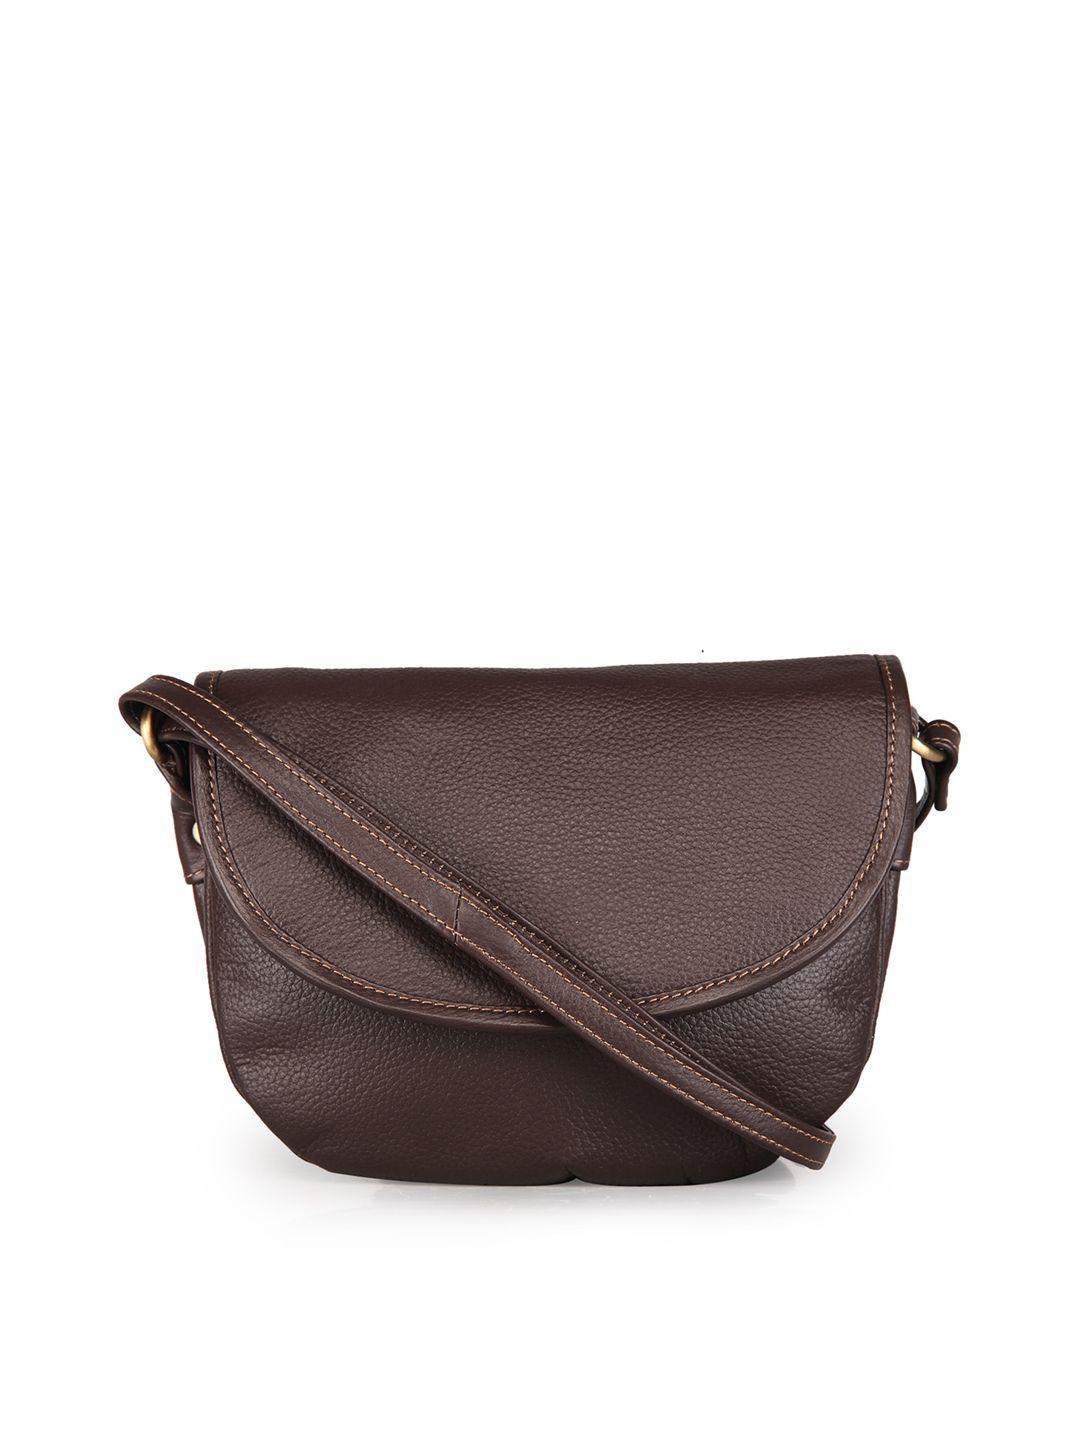 genwayne leather structured sling bag